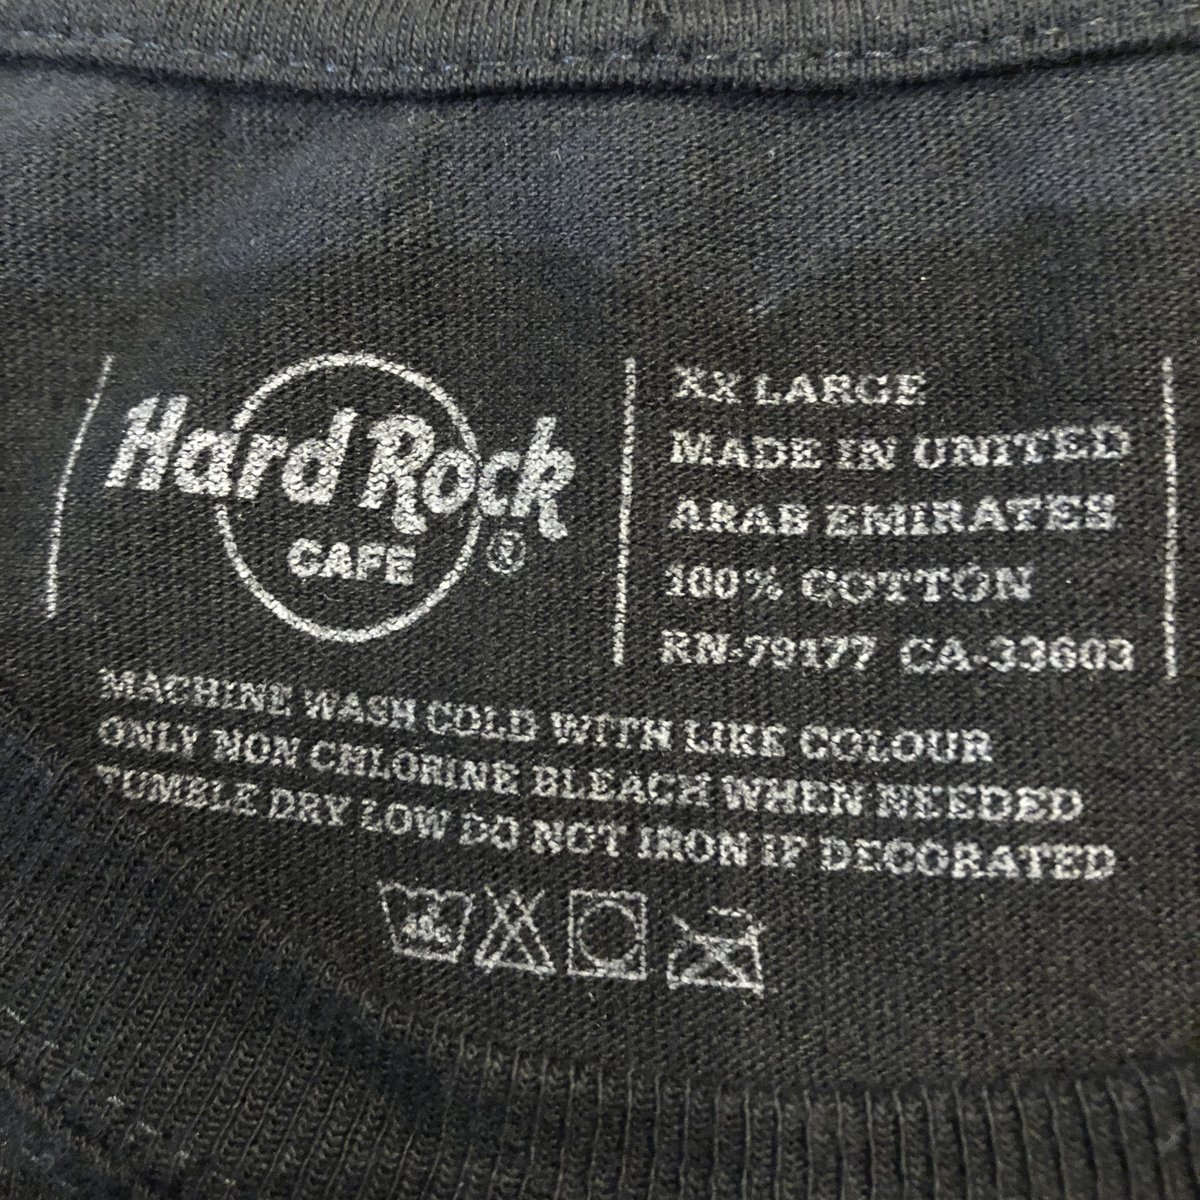 【人気アイテム】ハードロックカフェ ドイツ ケルン 革ロゴ Tシャツ ブラック